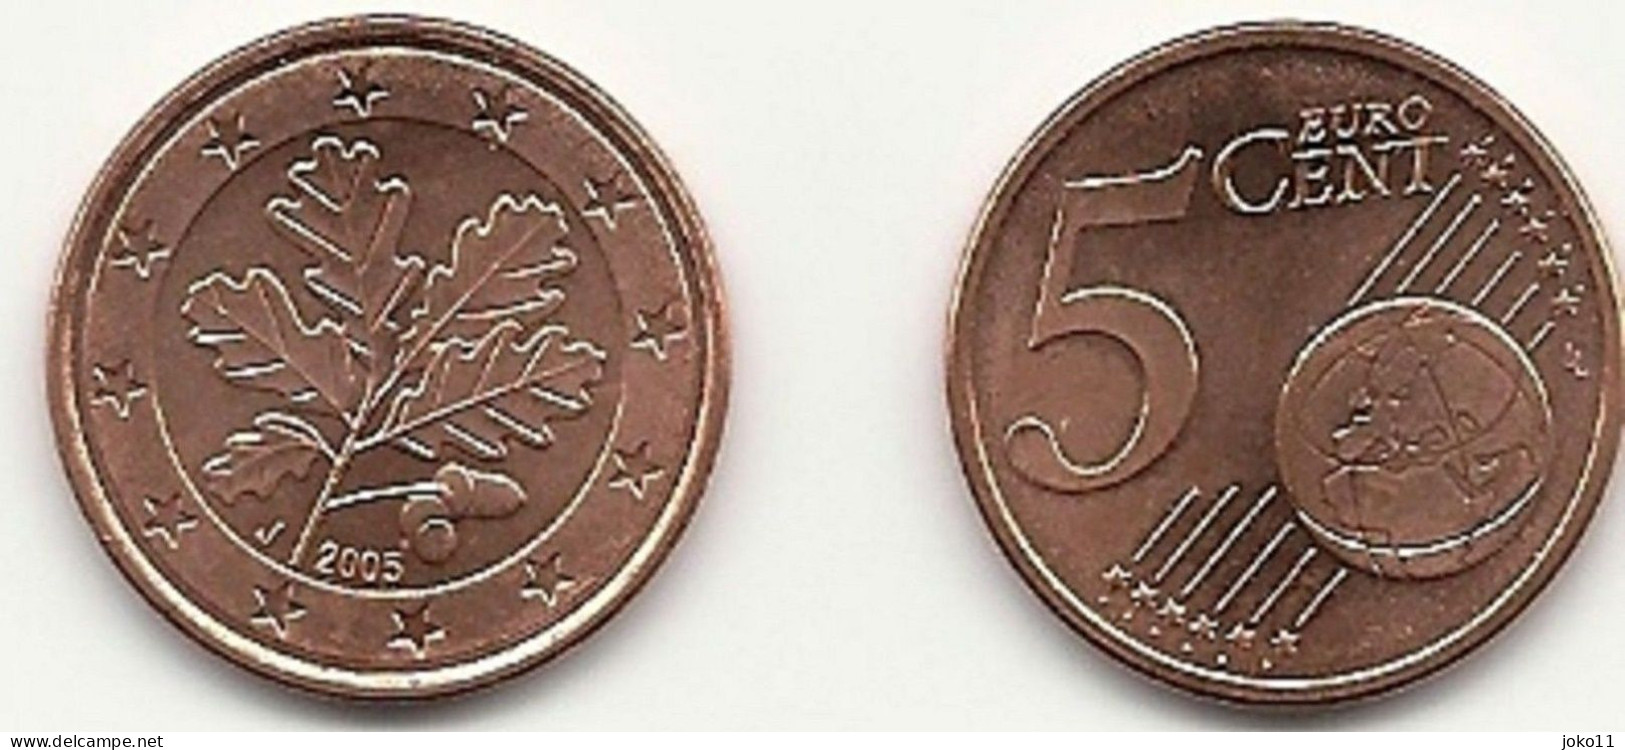 5 Cent, 2005 Prägestätte (J) Vz, Sehr Gut Erhaltene Umlaufmünze - Deutschland